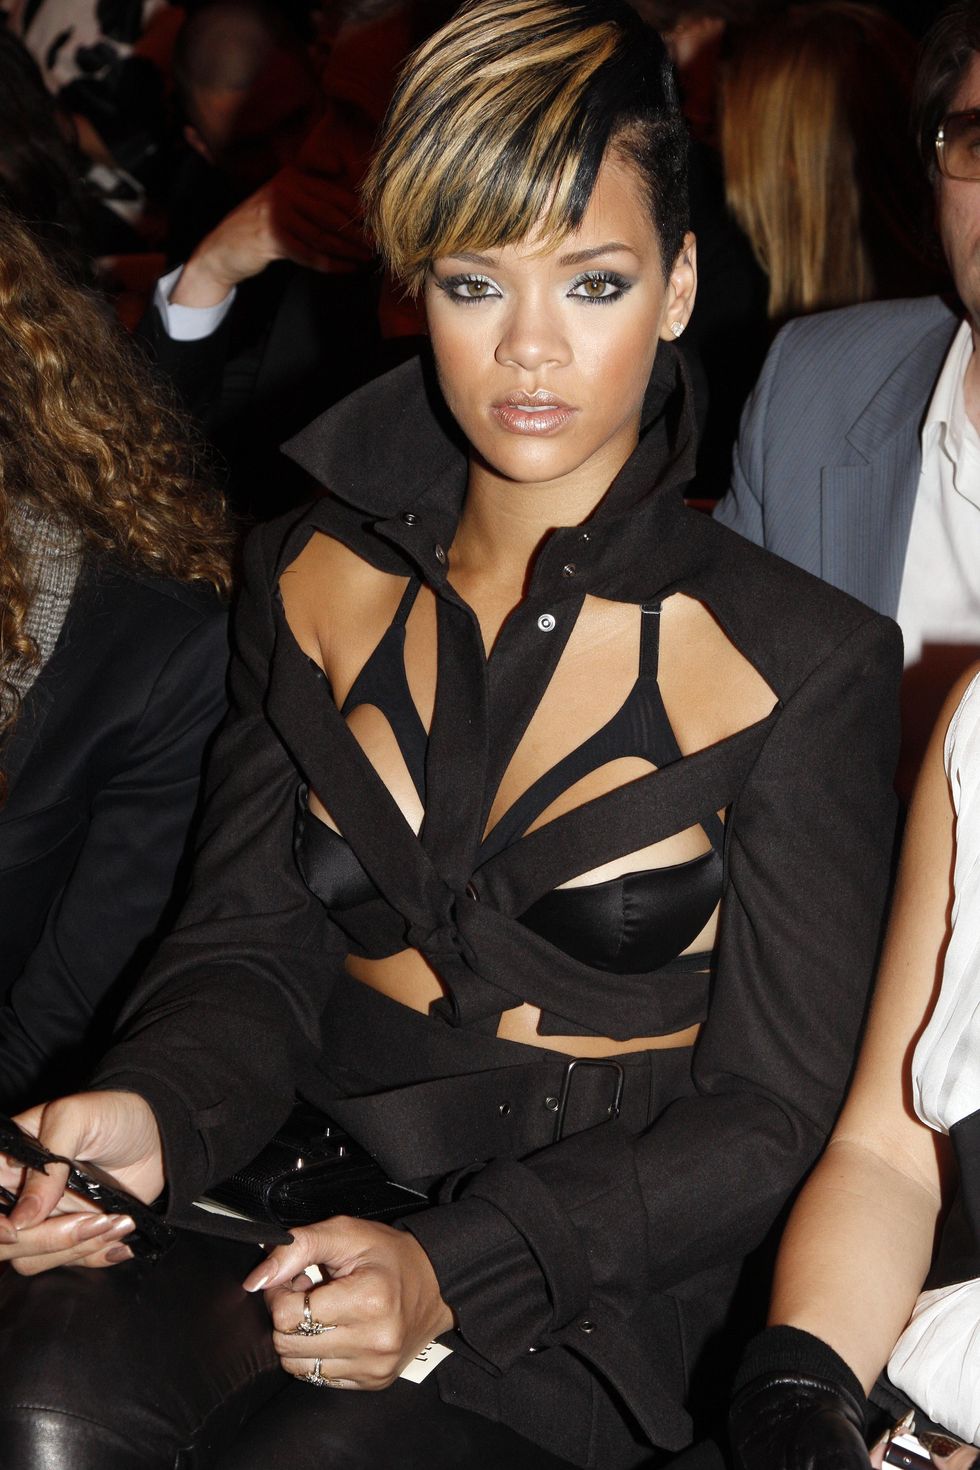 Rihanna wearing underwear as outerwear